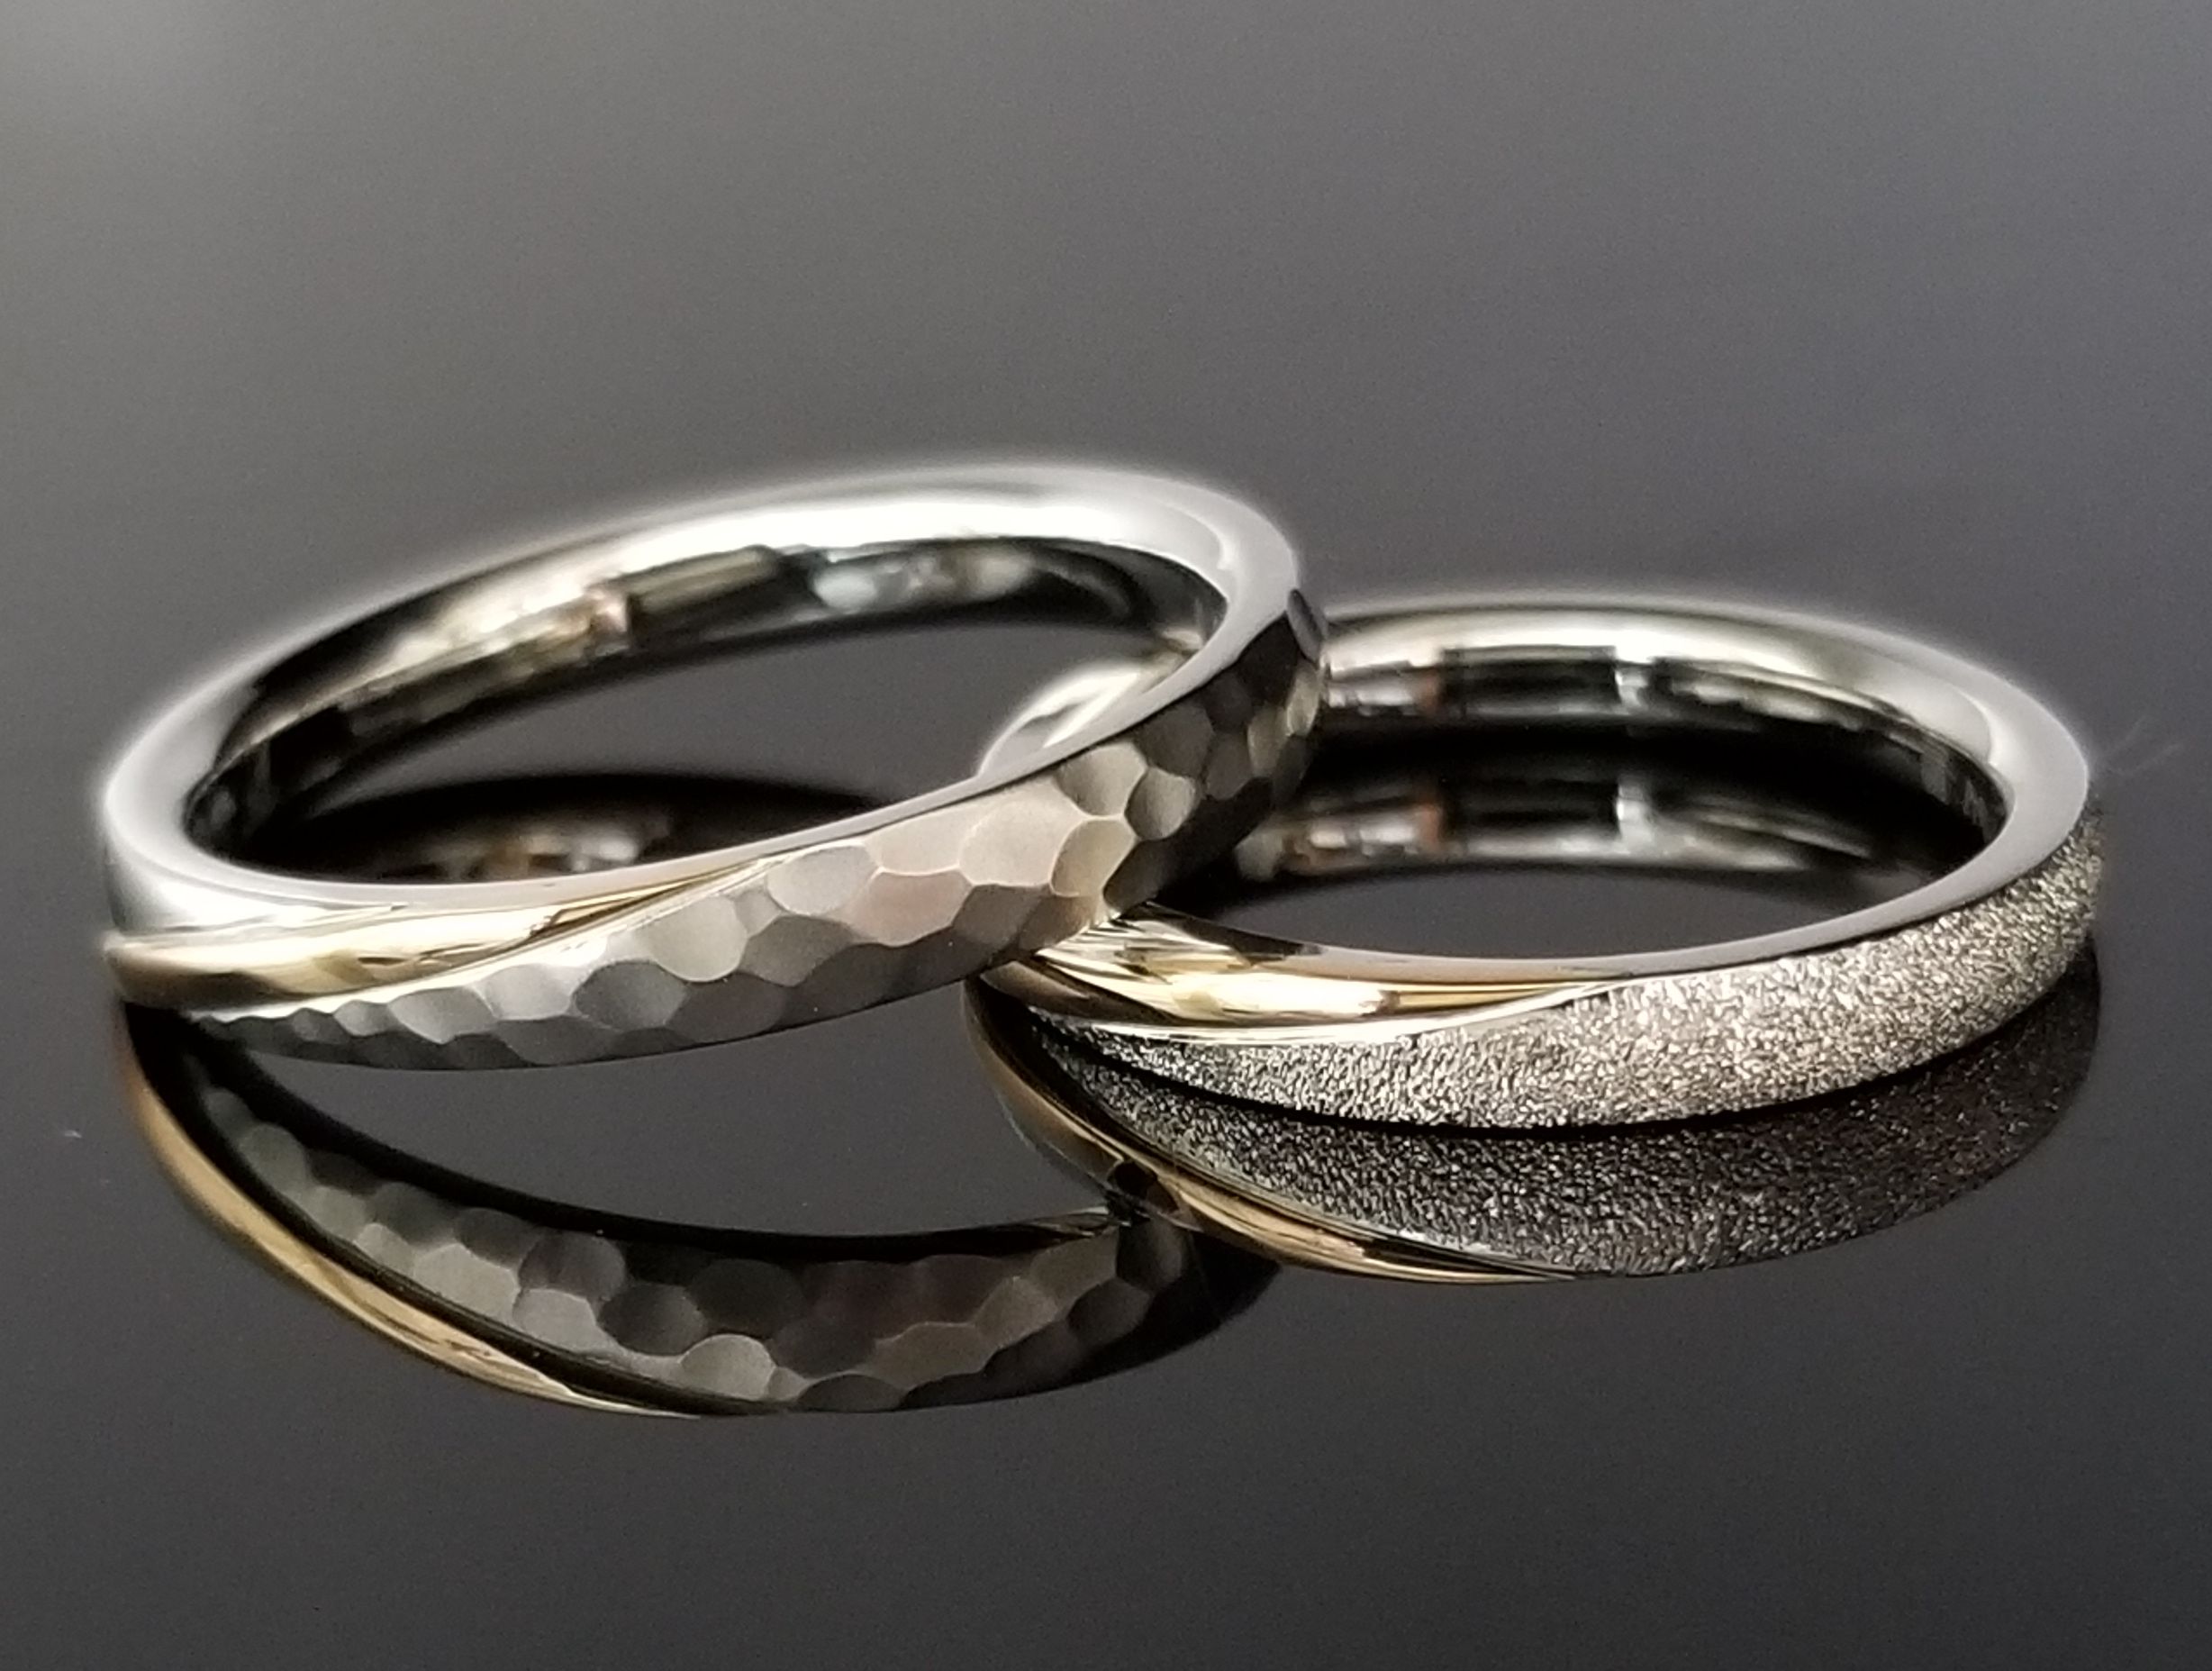 ピンクゴールドラインが美しい｜結婚指輪の作品集｜結婚・婚約指輪のオーダーメイドは鍛造指輪